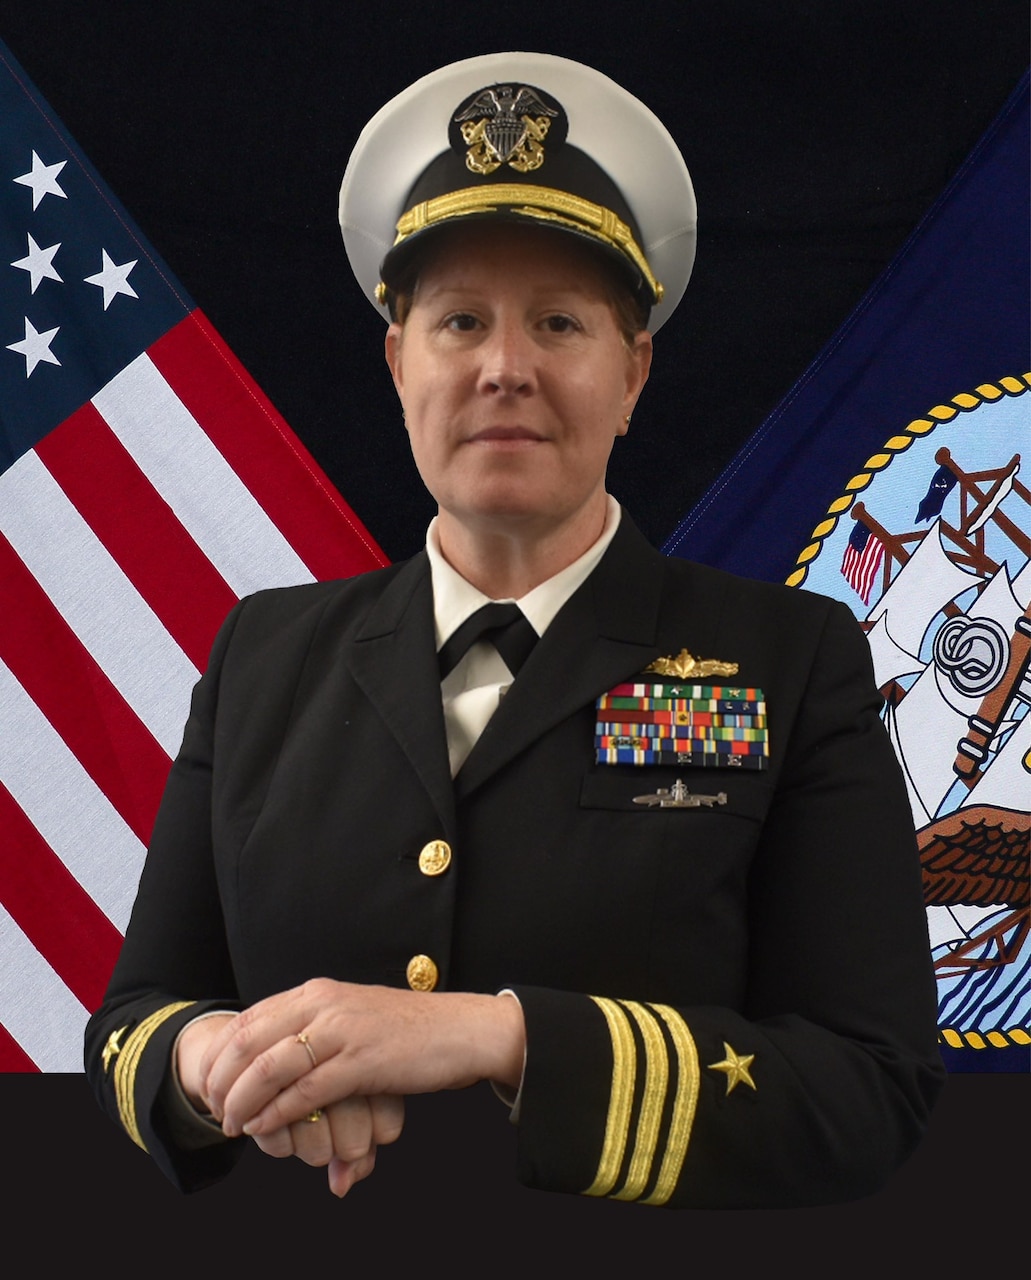 Commander Michelle A. Gire